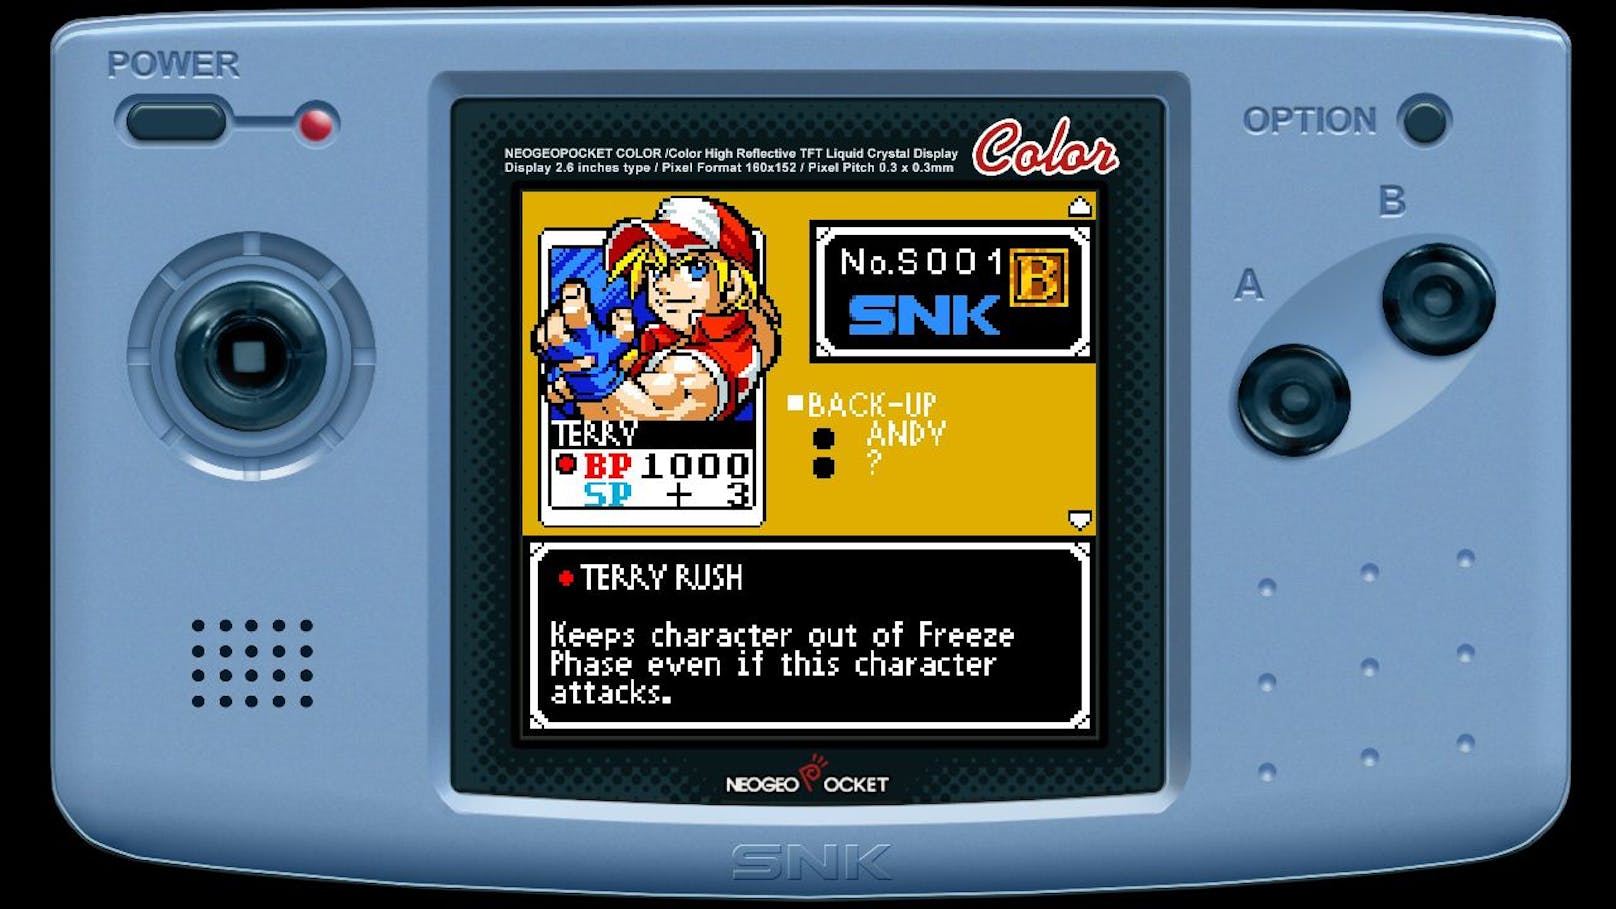 ... Nintendo DS veröffentlichte Game "SNK vs. Capcom: Card Fighters‘ Clash" nun neu aufgelegt. Das Karten-Kampfspiel lässt bekannte Charaketere der beiden ...